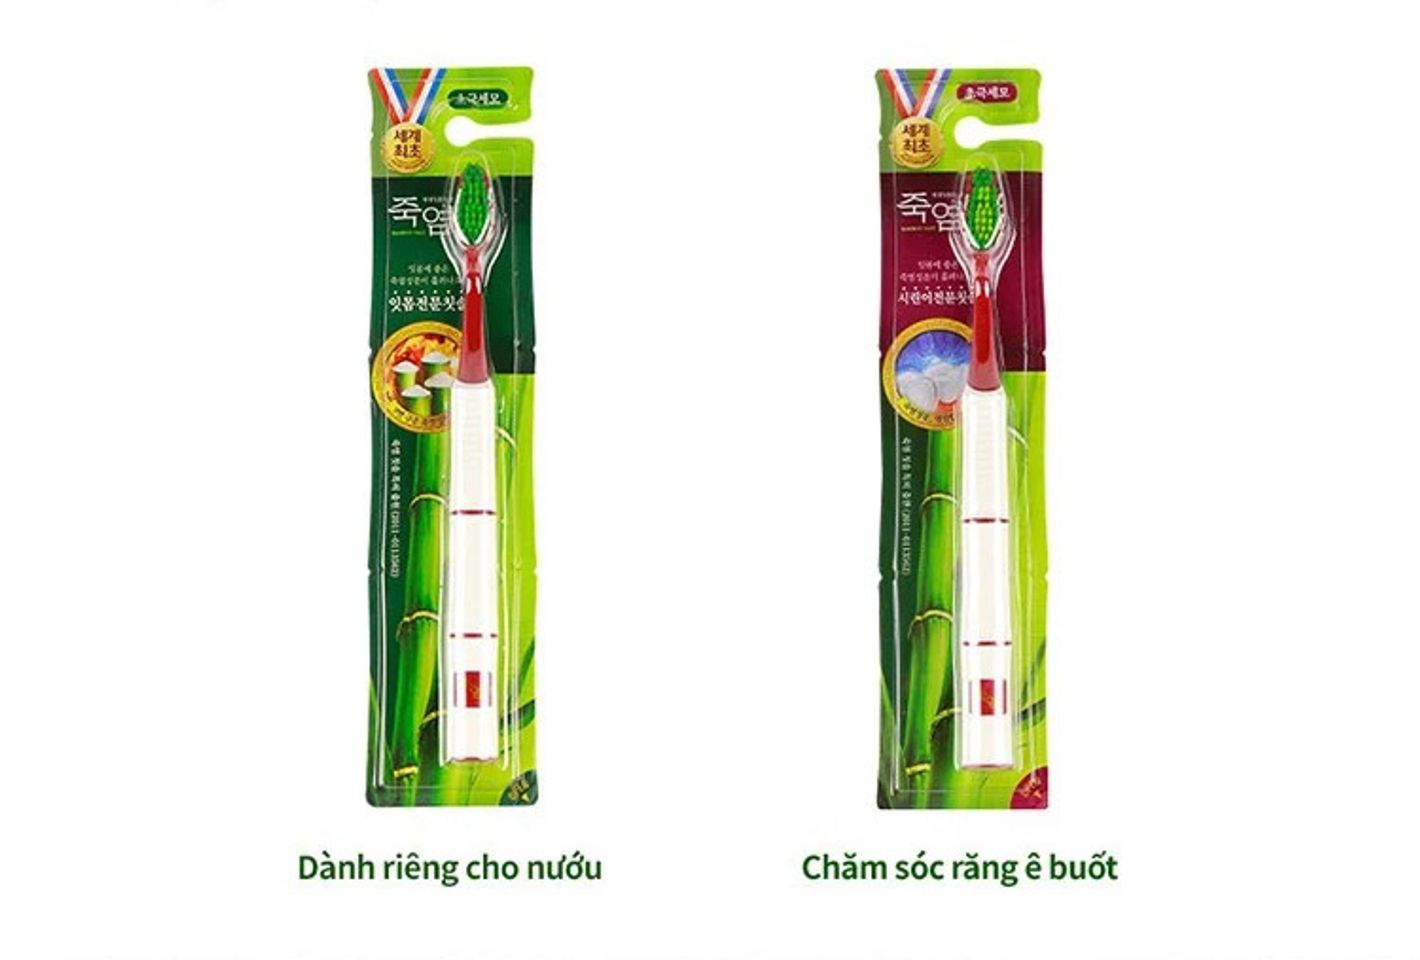 Bàn Chải Đánh Răng Bamboo Salt hiện đã có mặt tại Chiaki.vn với 2 phân loại cho bạn lựa chọn.